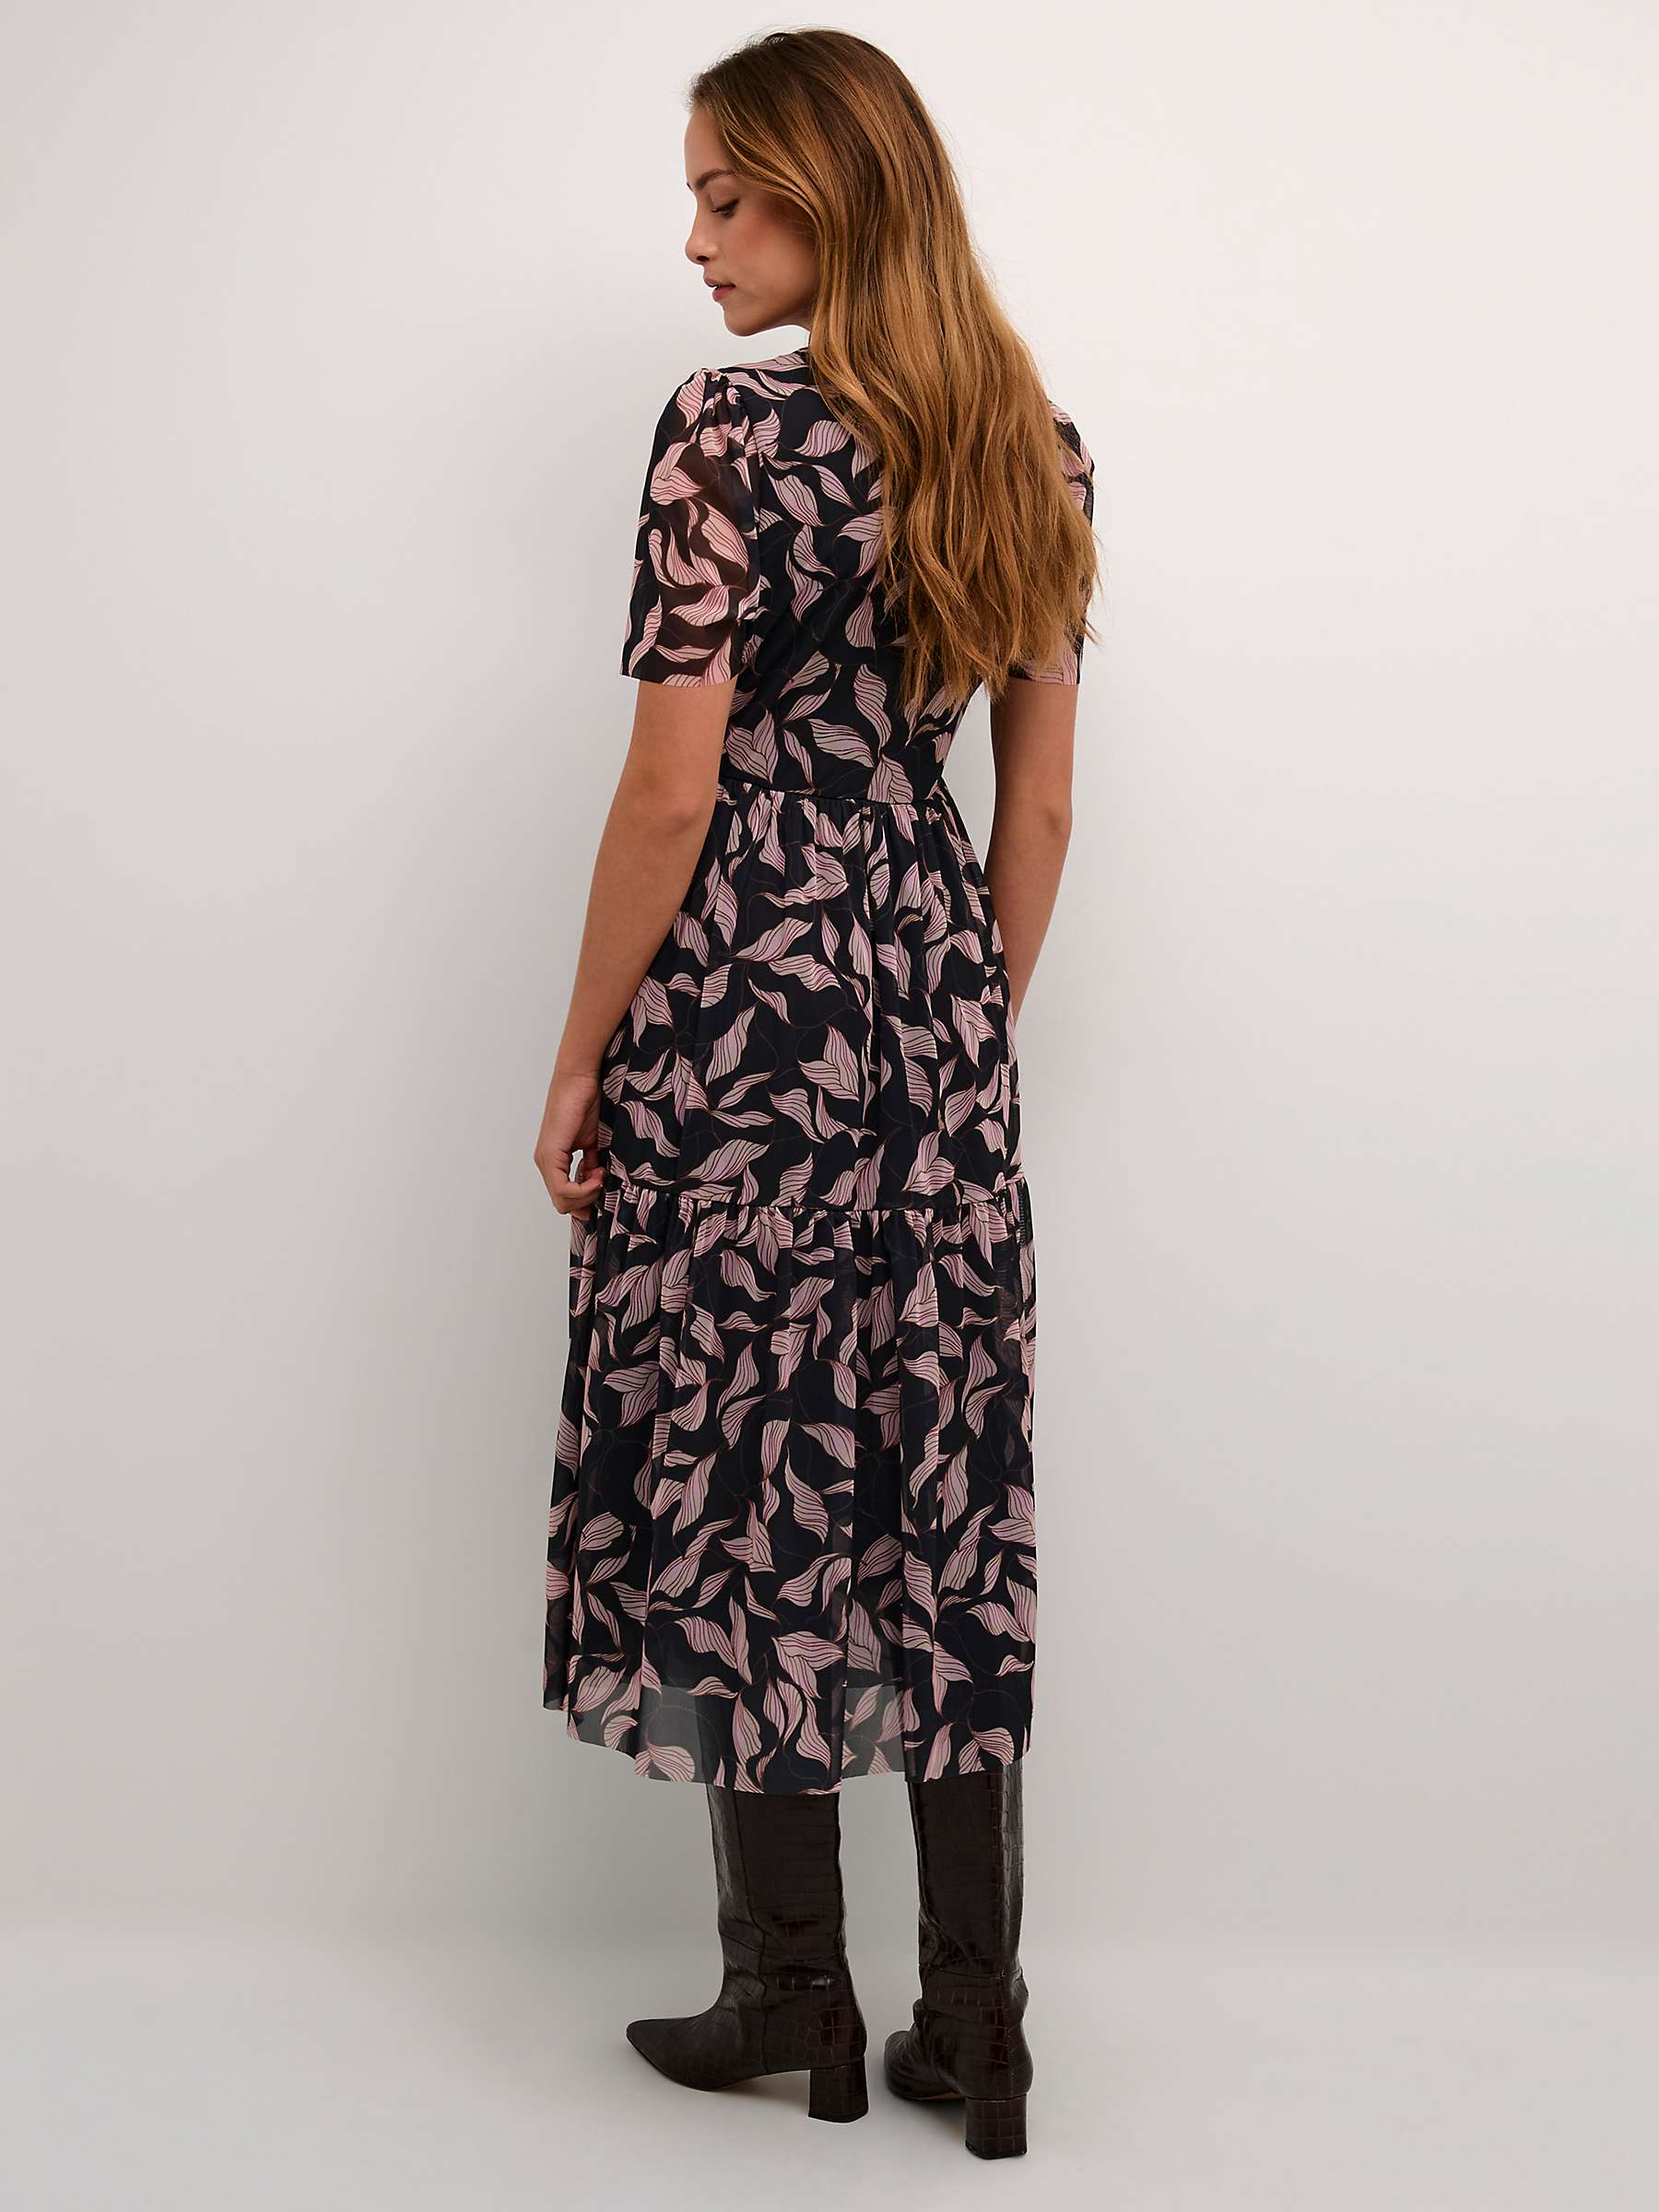 Buy Soaked In Luxury Aldora Mesh Short Sleeve Wrap Dress, Black Leaves Online at johnlewis.com